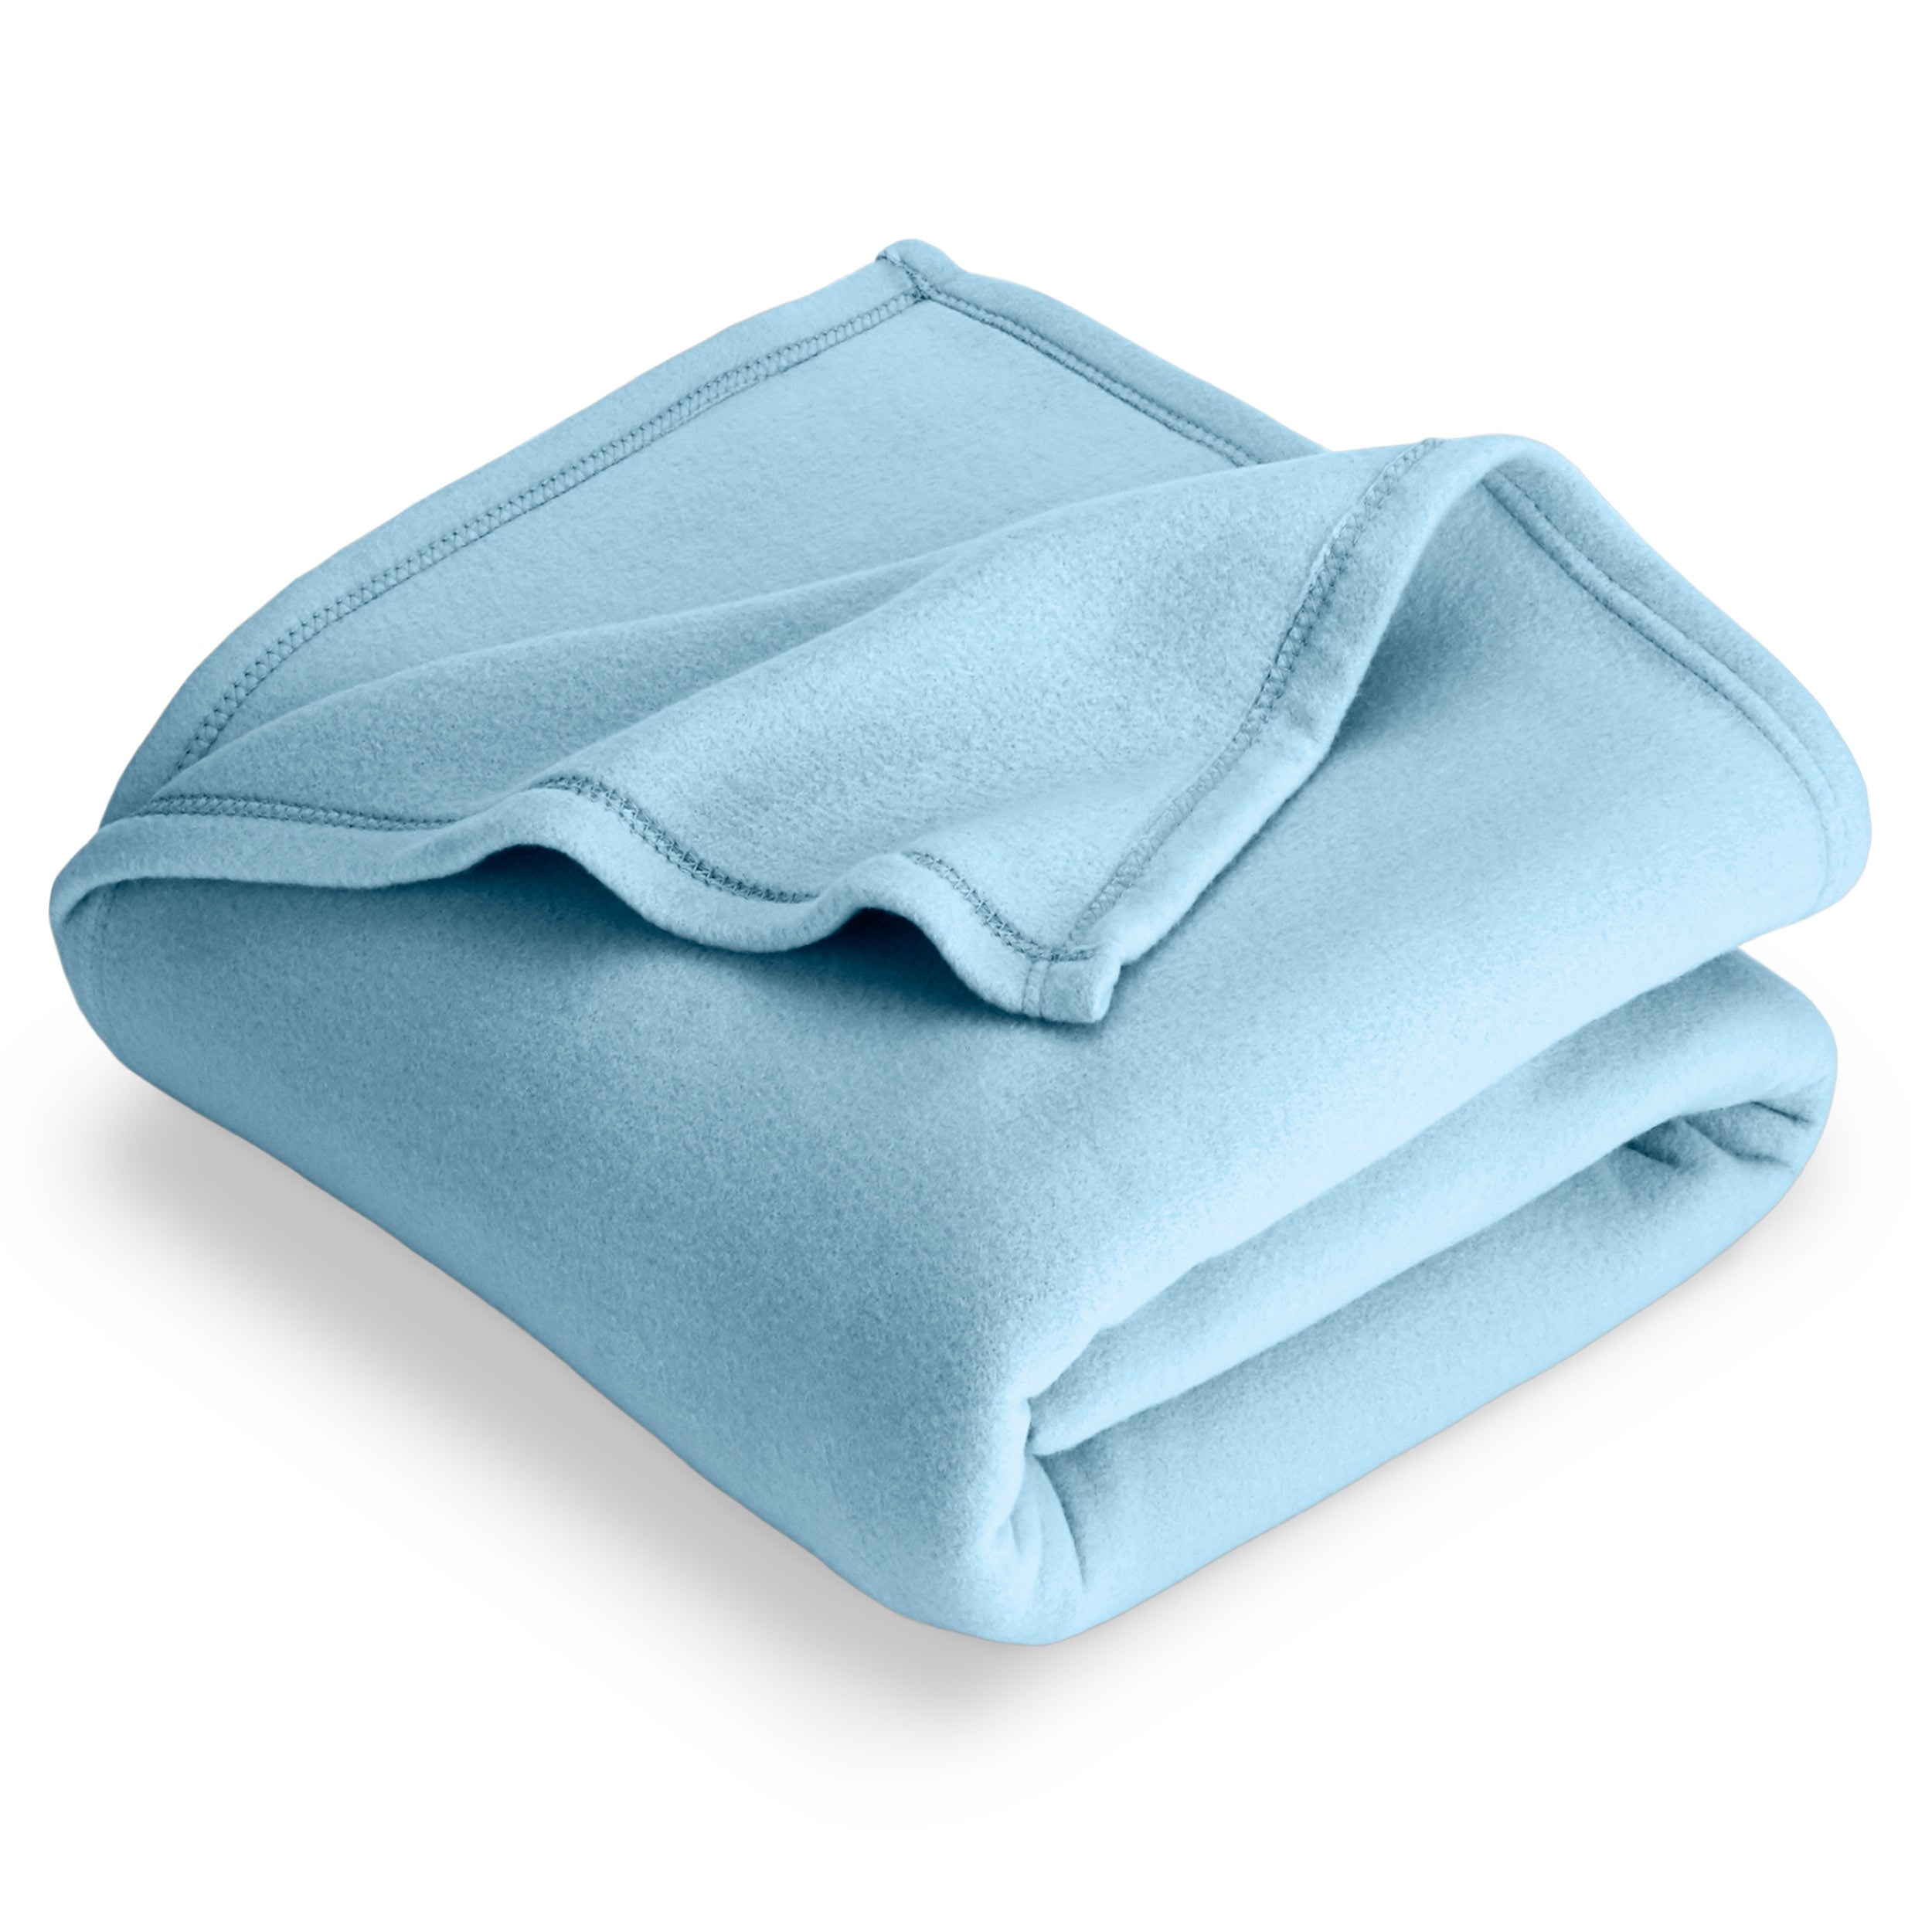 Light blue polar fleece blanket folded with 1 corner folded back